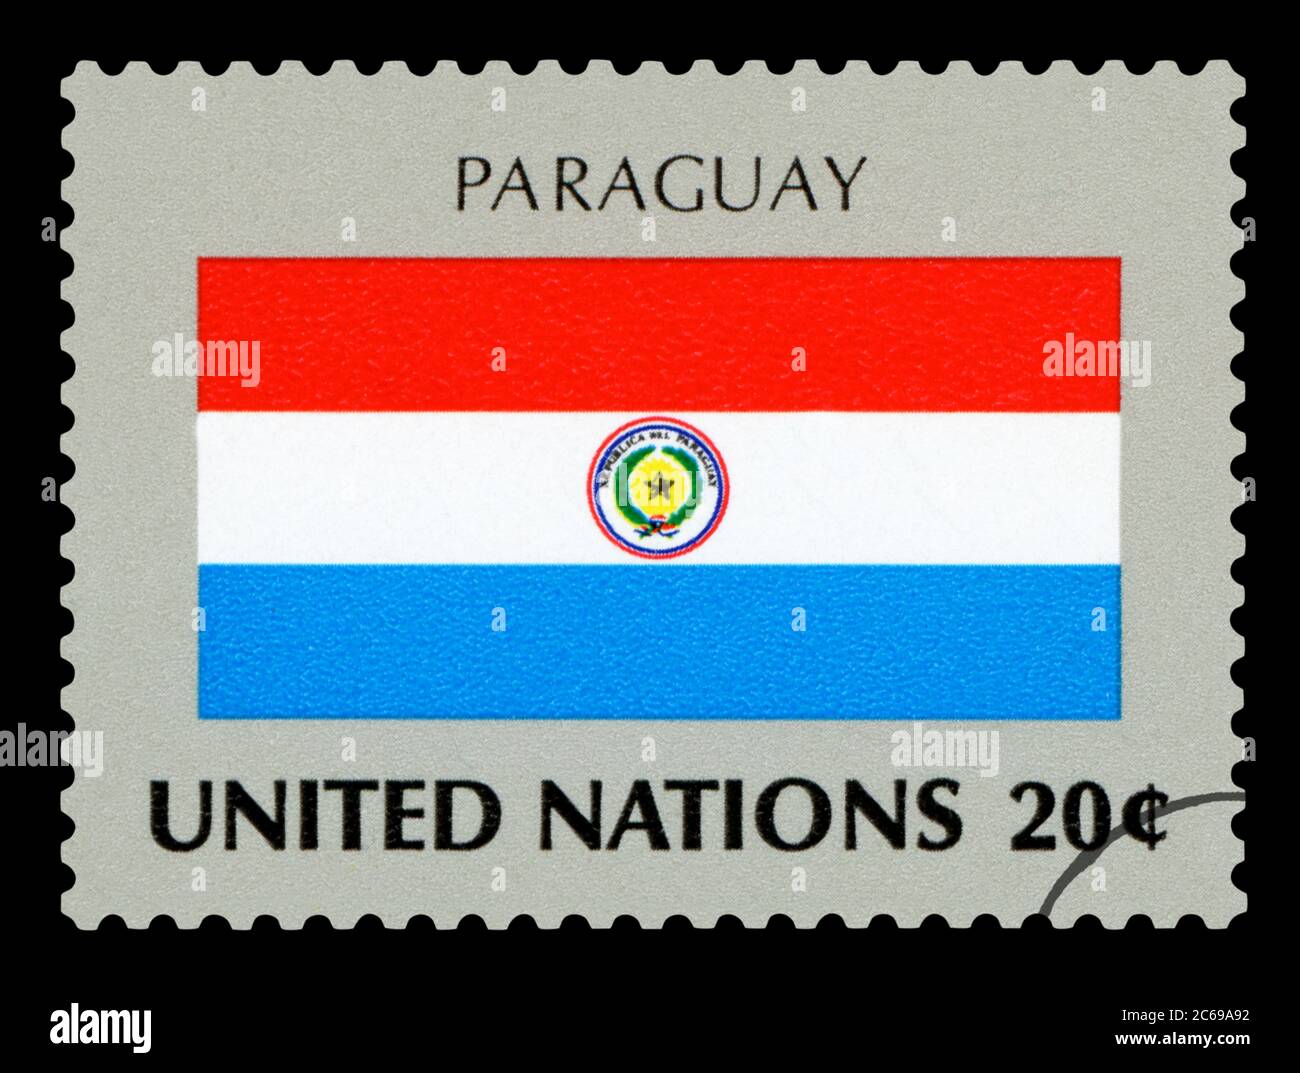 PARAGUAY - timbre de poste du drapeau national du Paraguay, série des Nations Unies, vers 1984. Isolé sur fond noir. Banque D'Images